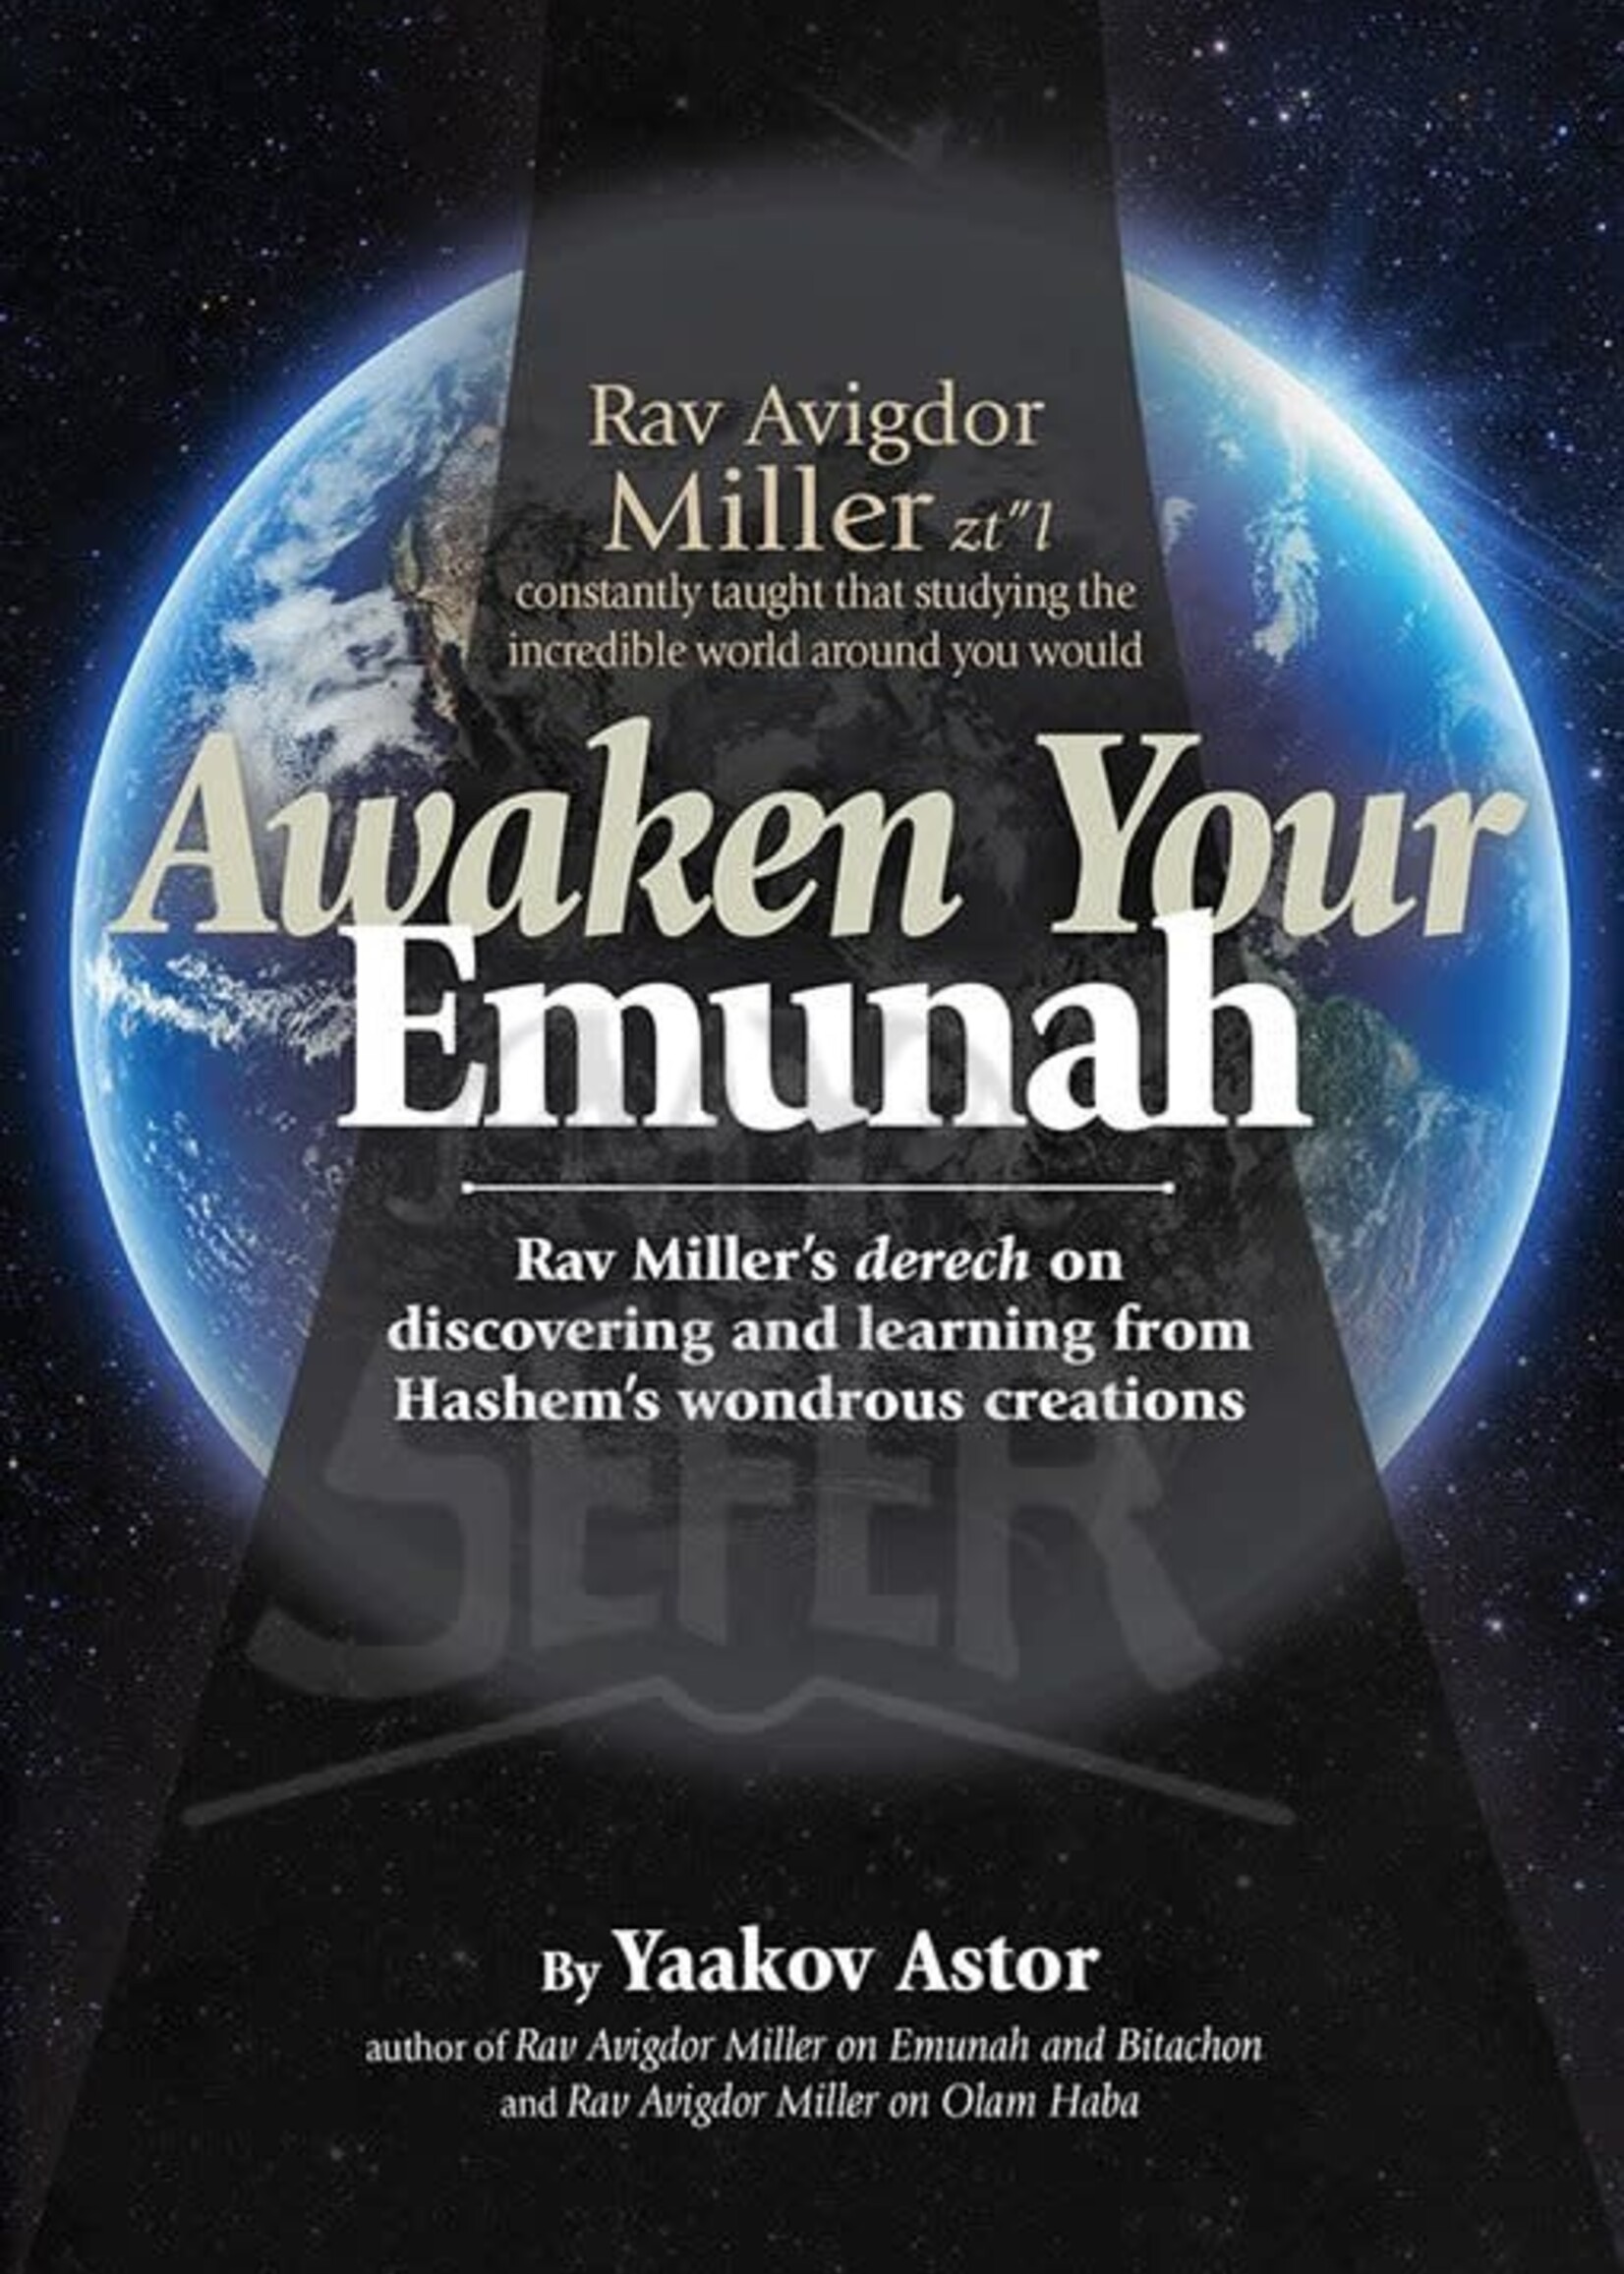 Rabbi Yaakov Astor Awaken Your Emunah